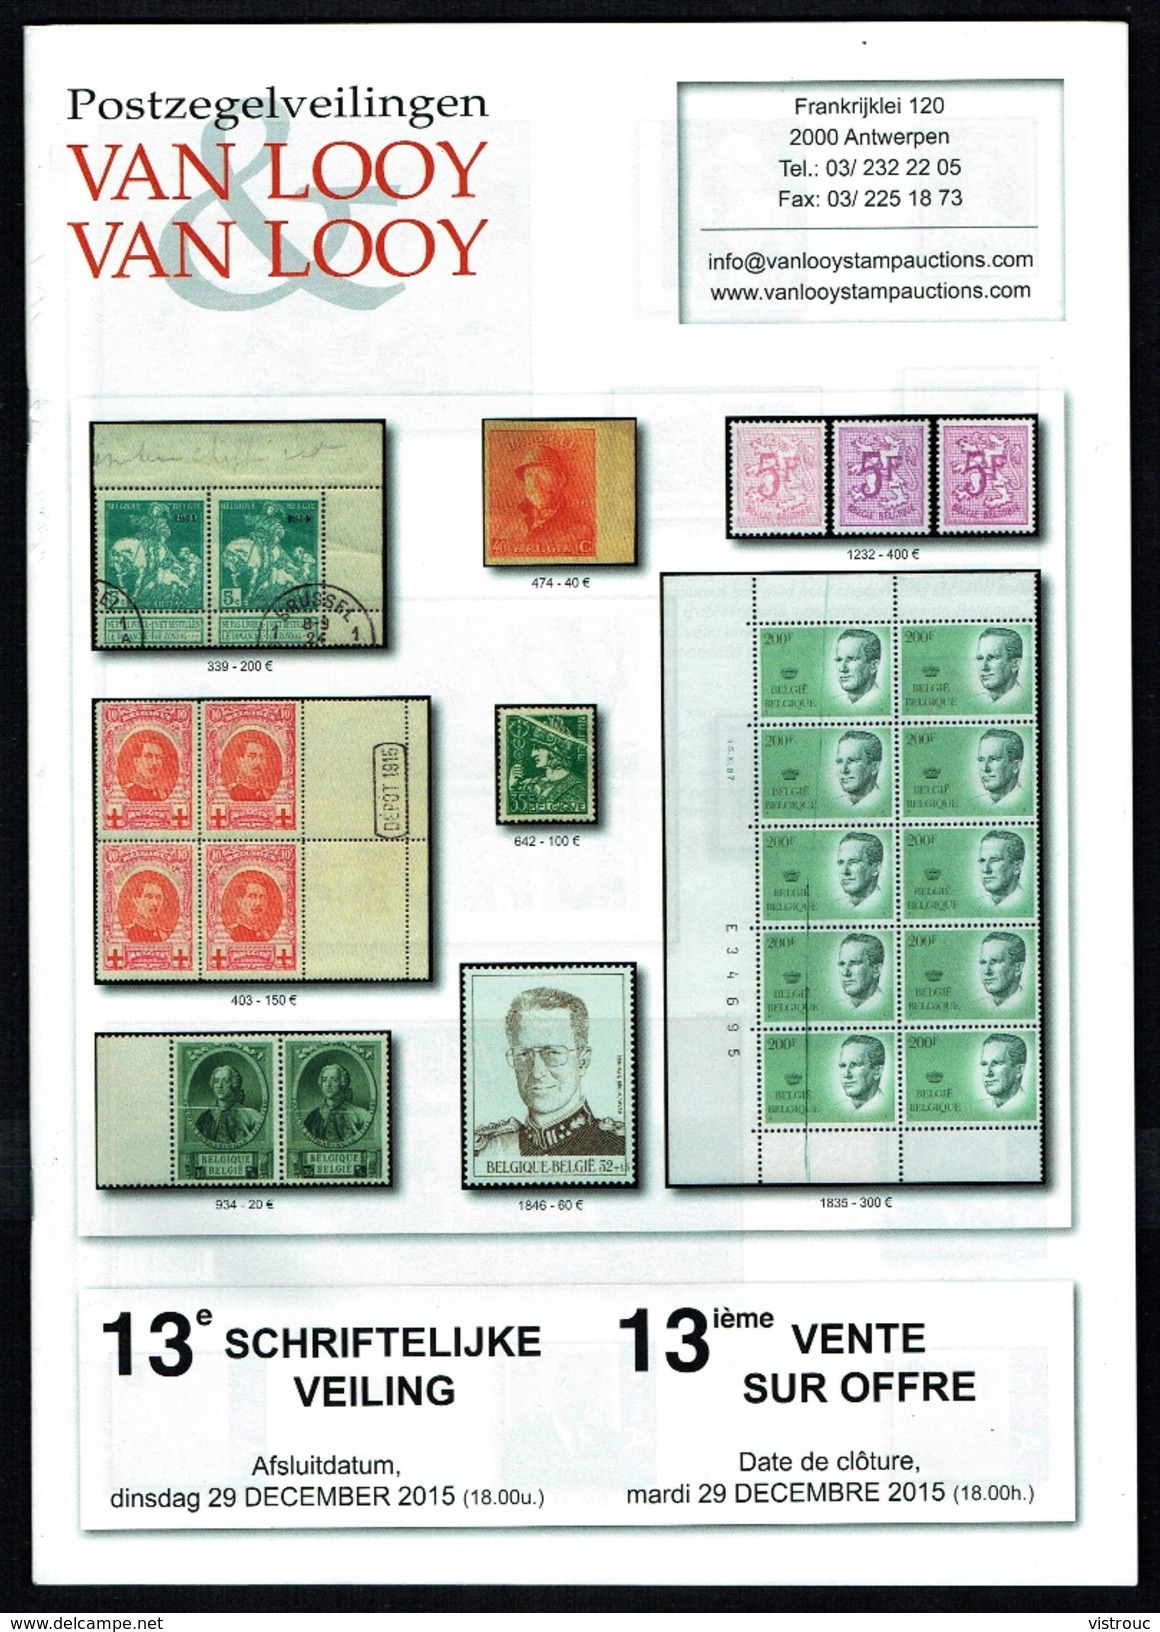 Maison VAN LOOY -  13 E Vente - Anvers - Décembre 2015. - Catalogues For Auction Houses